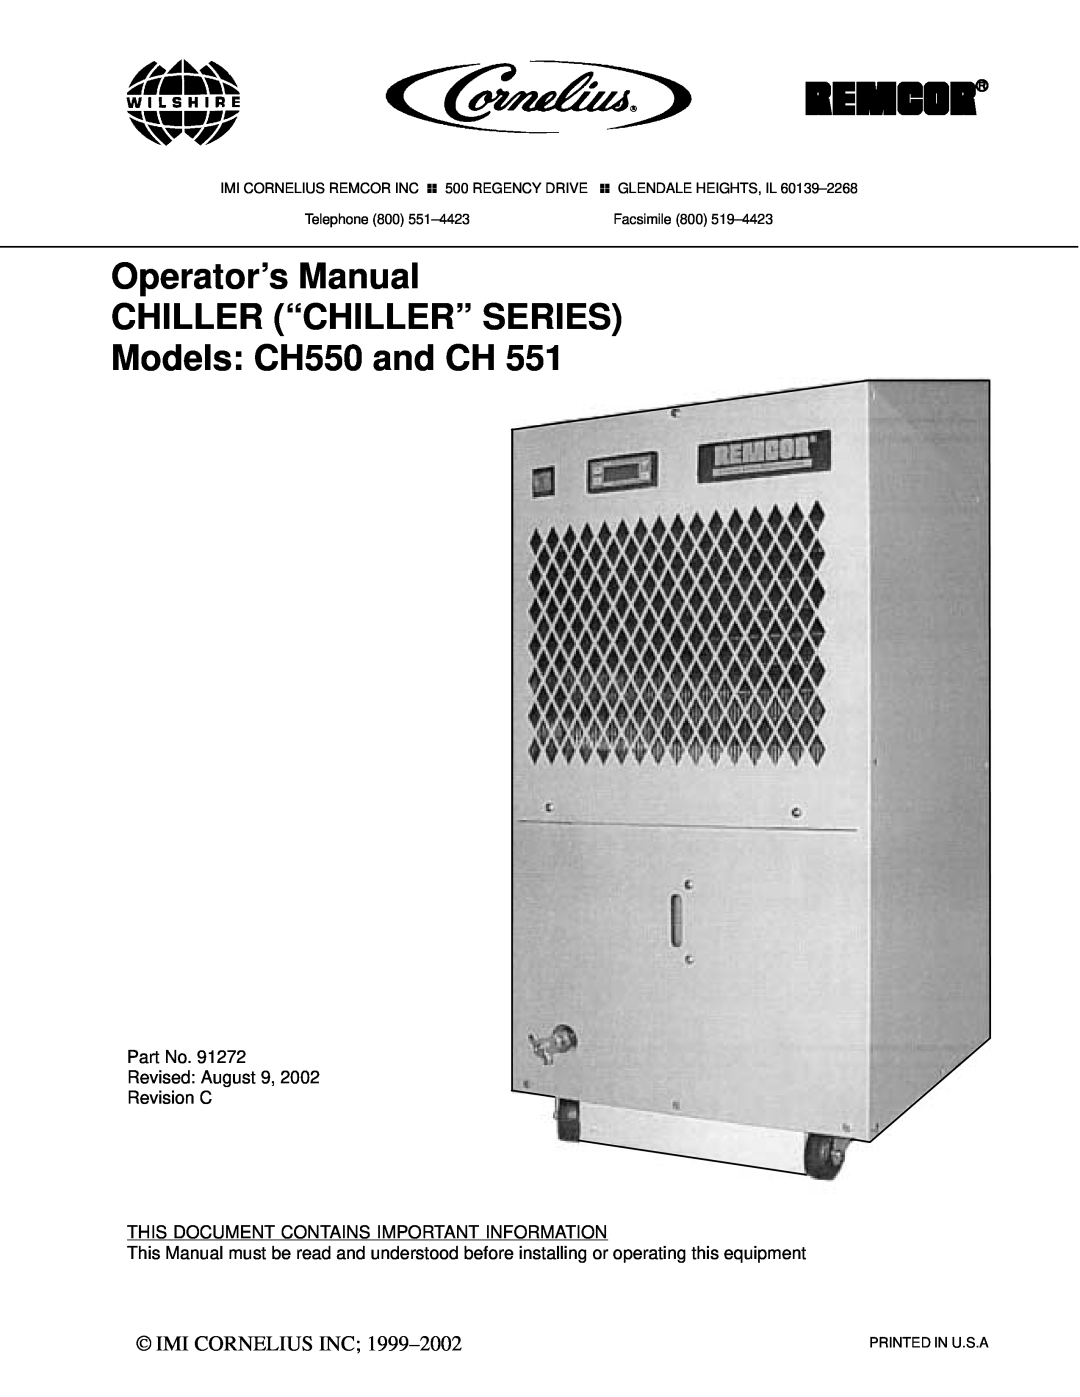 Cornelius CH 551 manual Imi Cornelius Inc, Operator’s Manual CHILLER “CHILLER” SERIES, Models CH550 and CH, Facsimile 